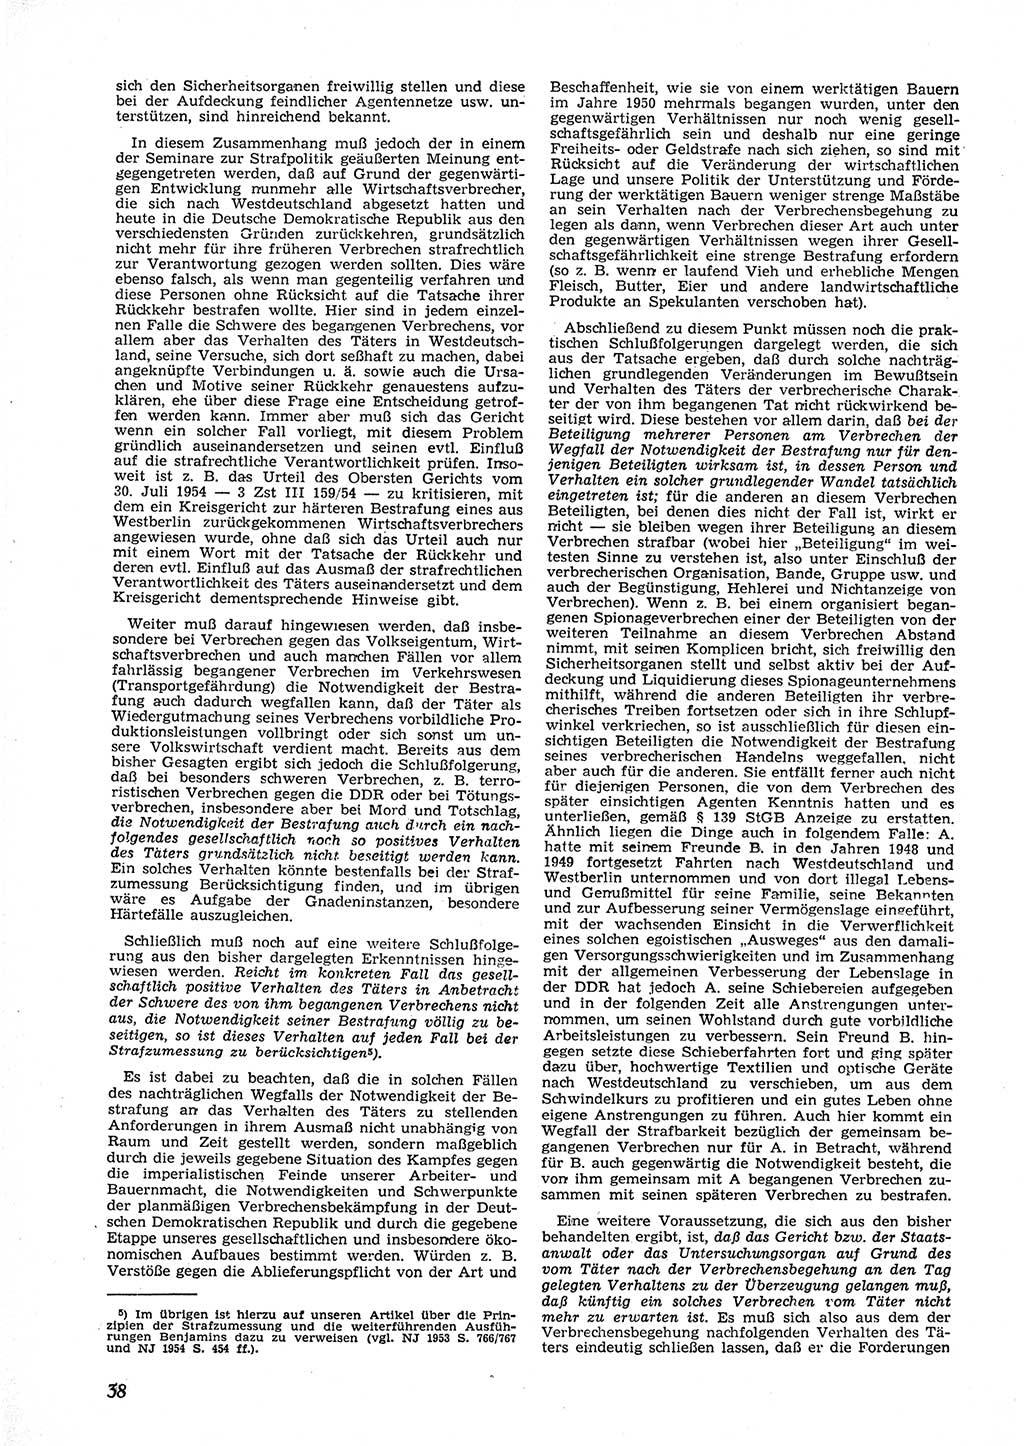 Neue Justiz (NJ), Zeitschrift für Recht und Rechtswissenschaft [Deutsche Demokratische Republik (DDR)], 9. Jahrgang 1955, Seite 38 (NJ DDR 1955, S. 38)